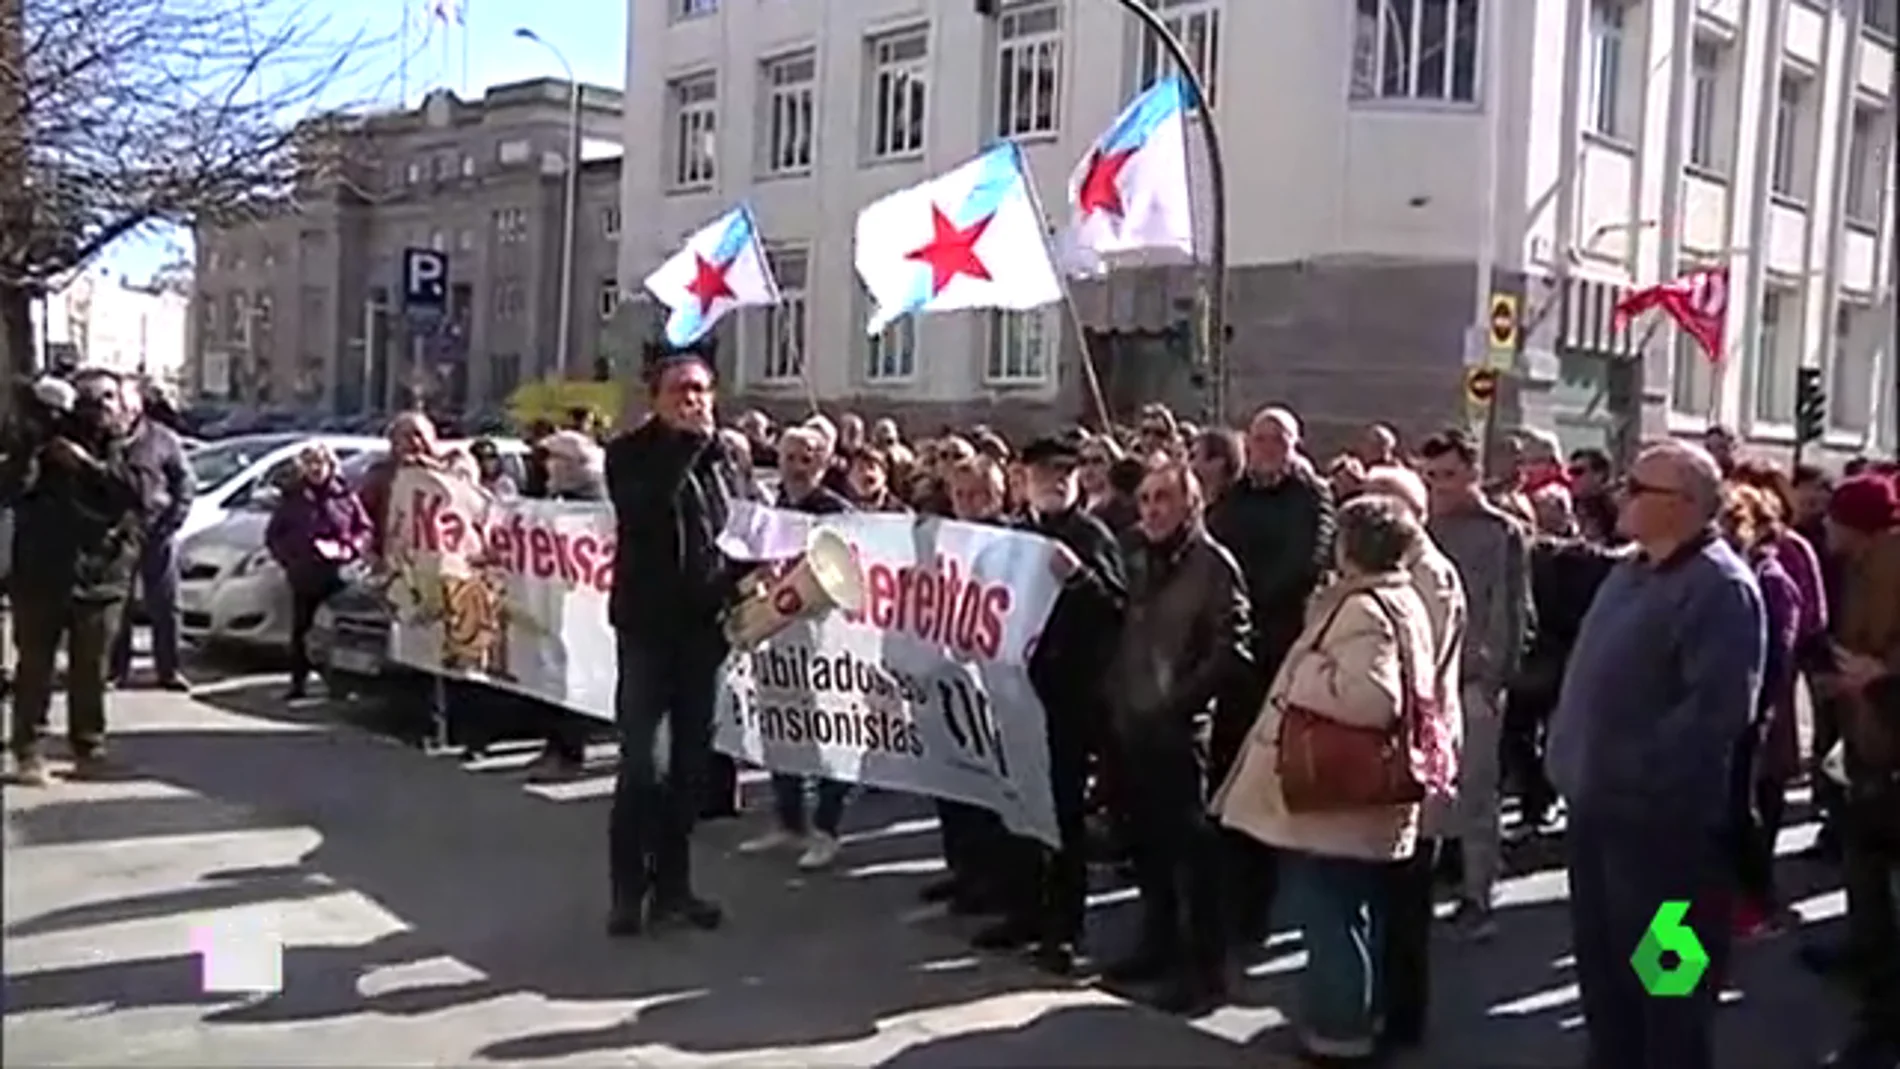 Los pensionistas gallegos salen a la calle contra la "precariedad"